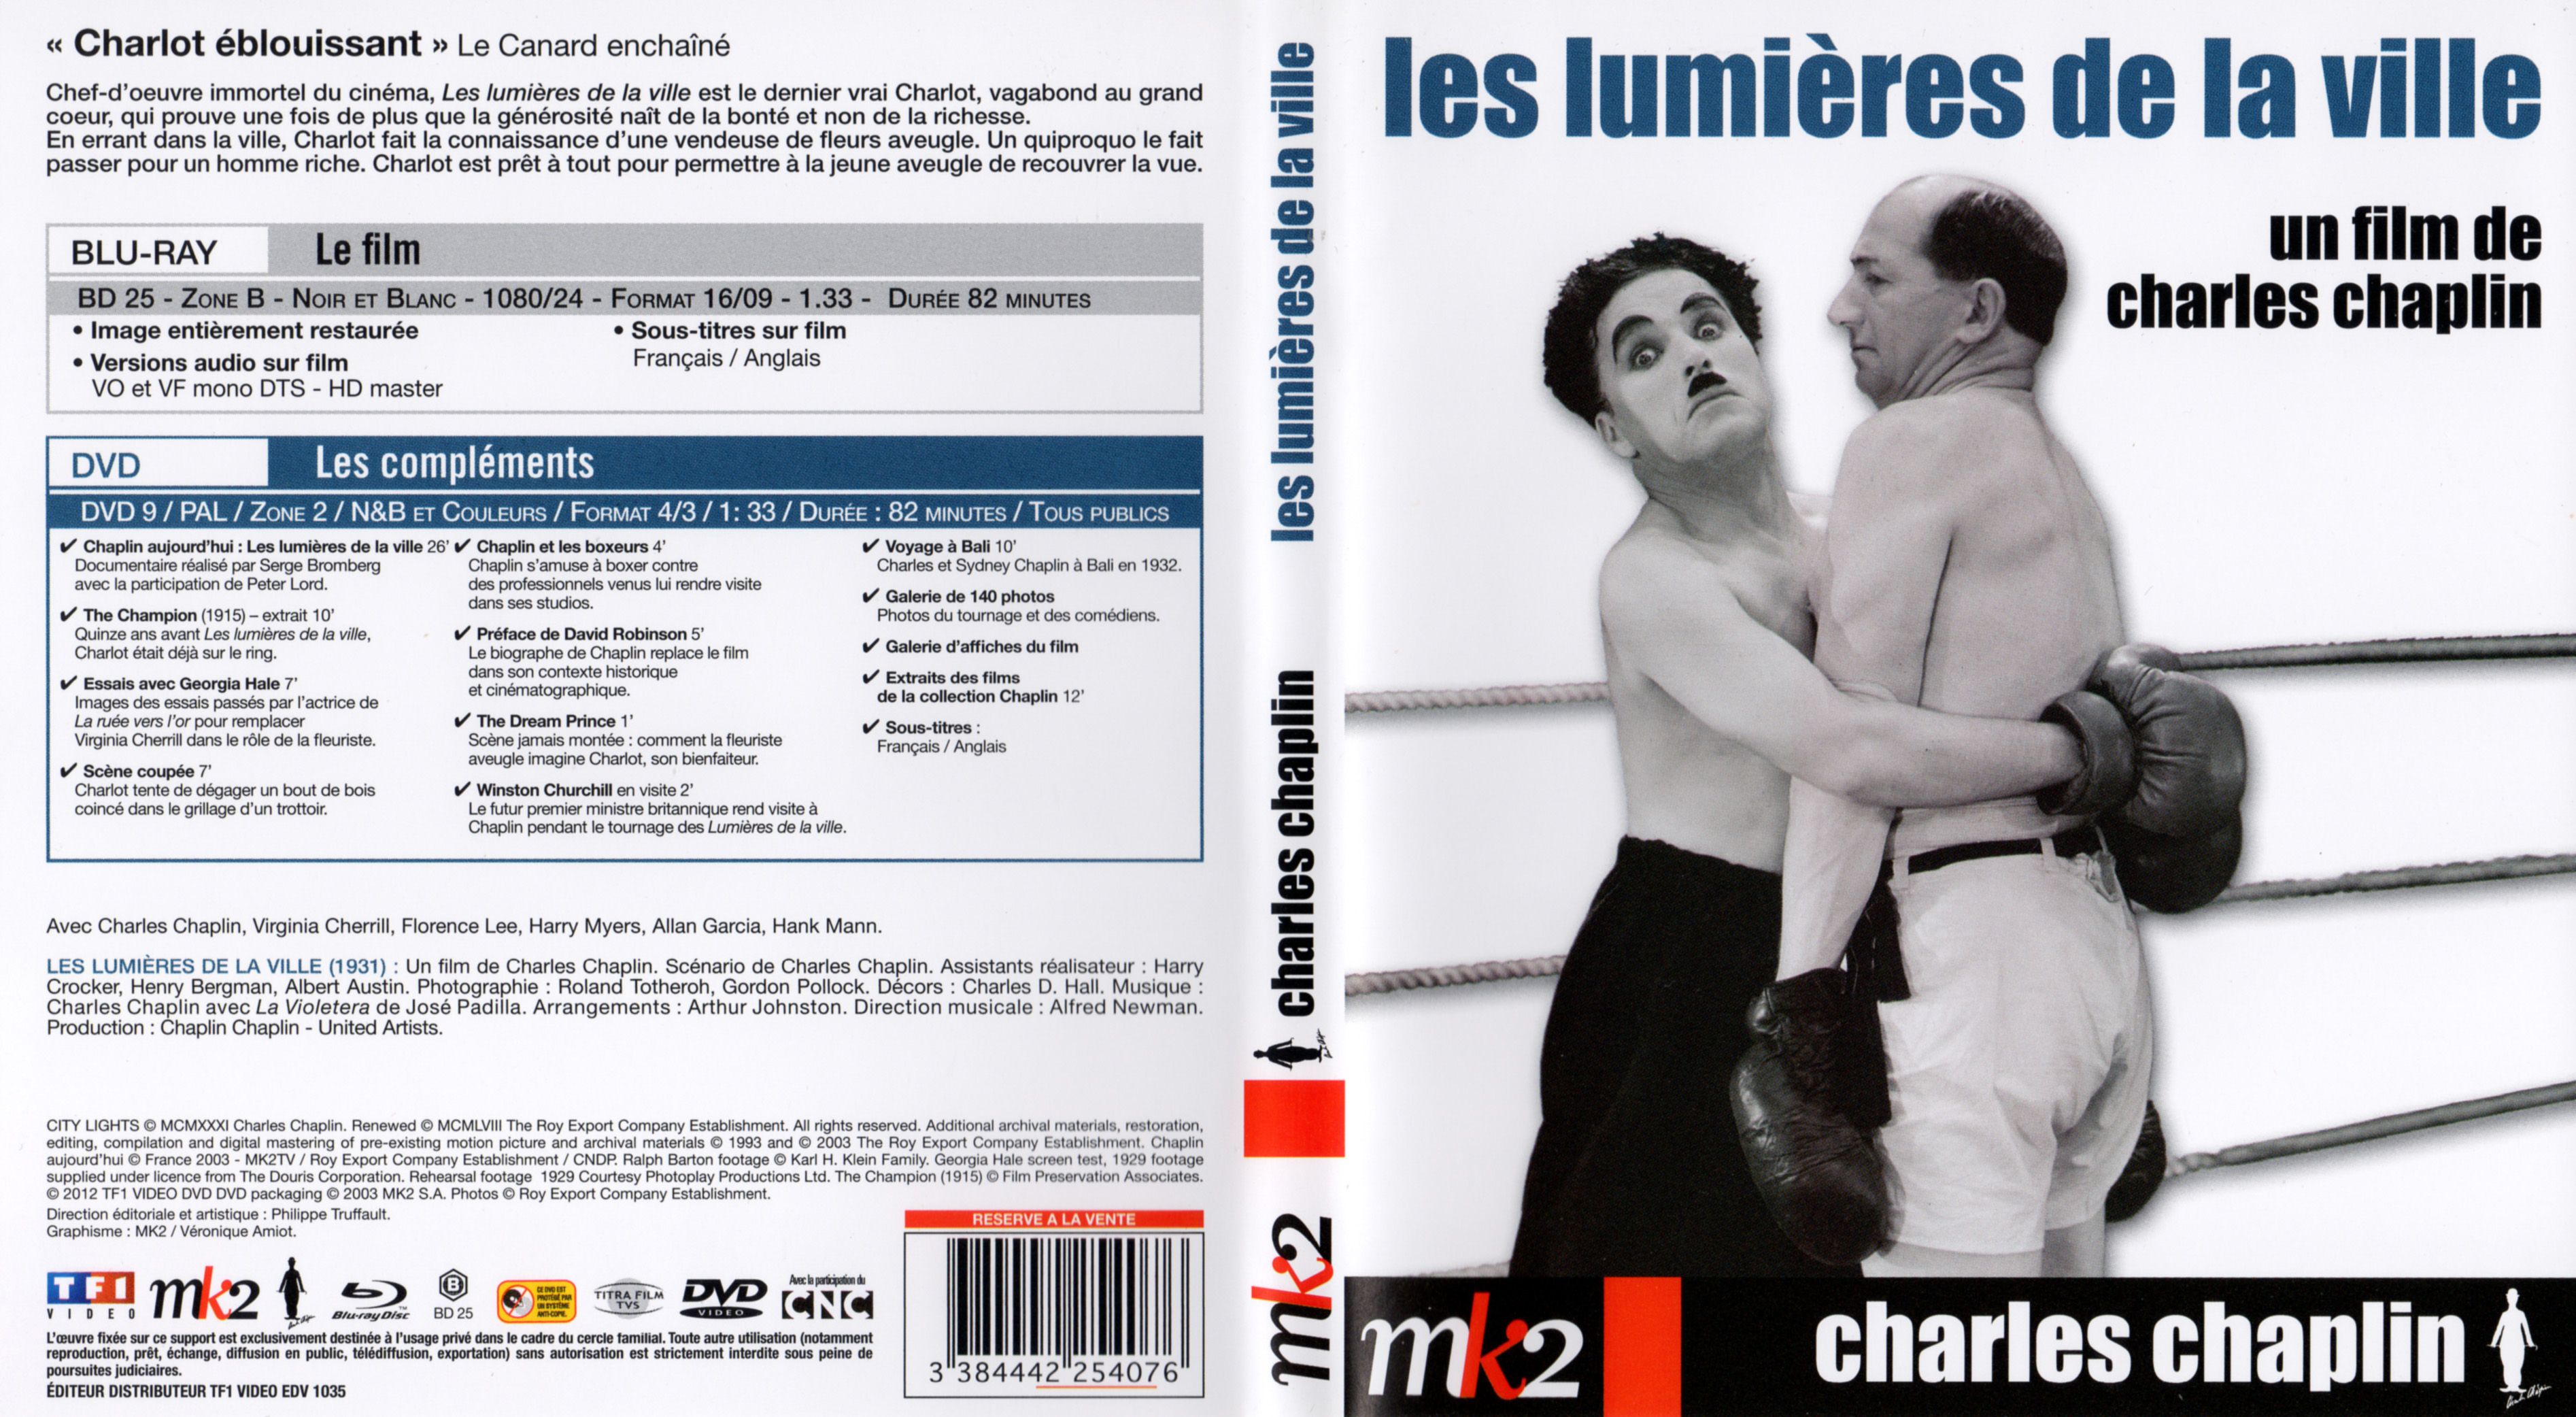 Jaquette DVD Les lumires de la ville (BLU-RAY)